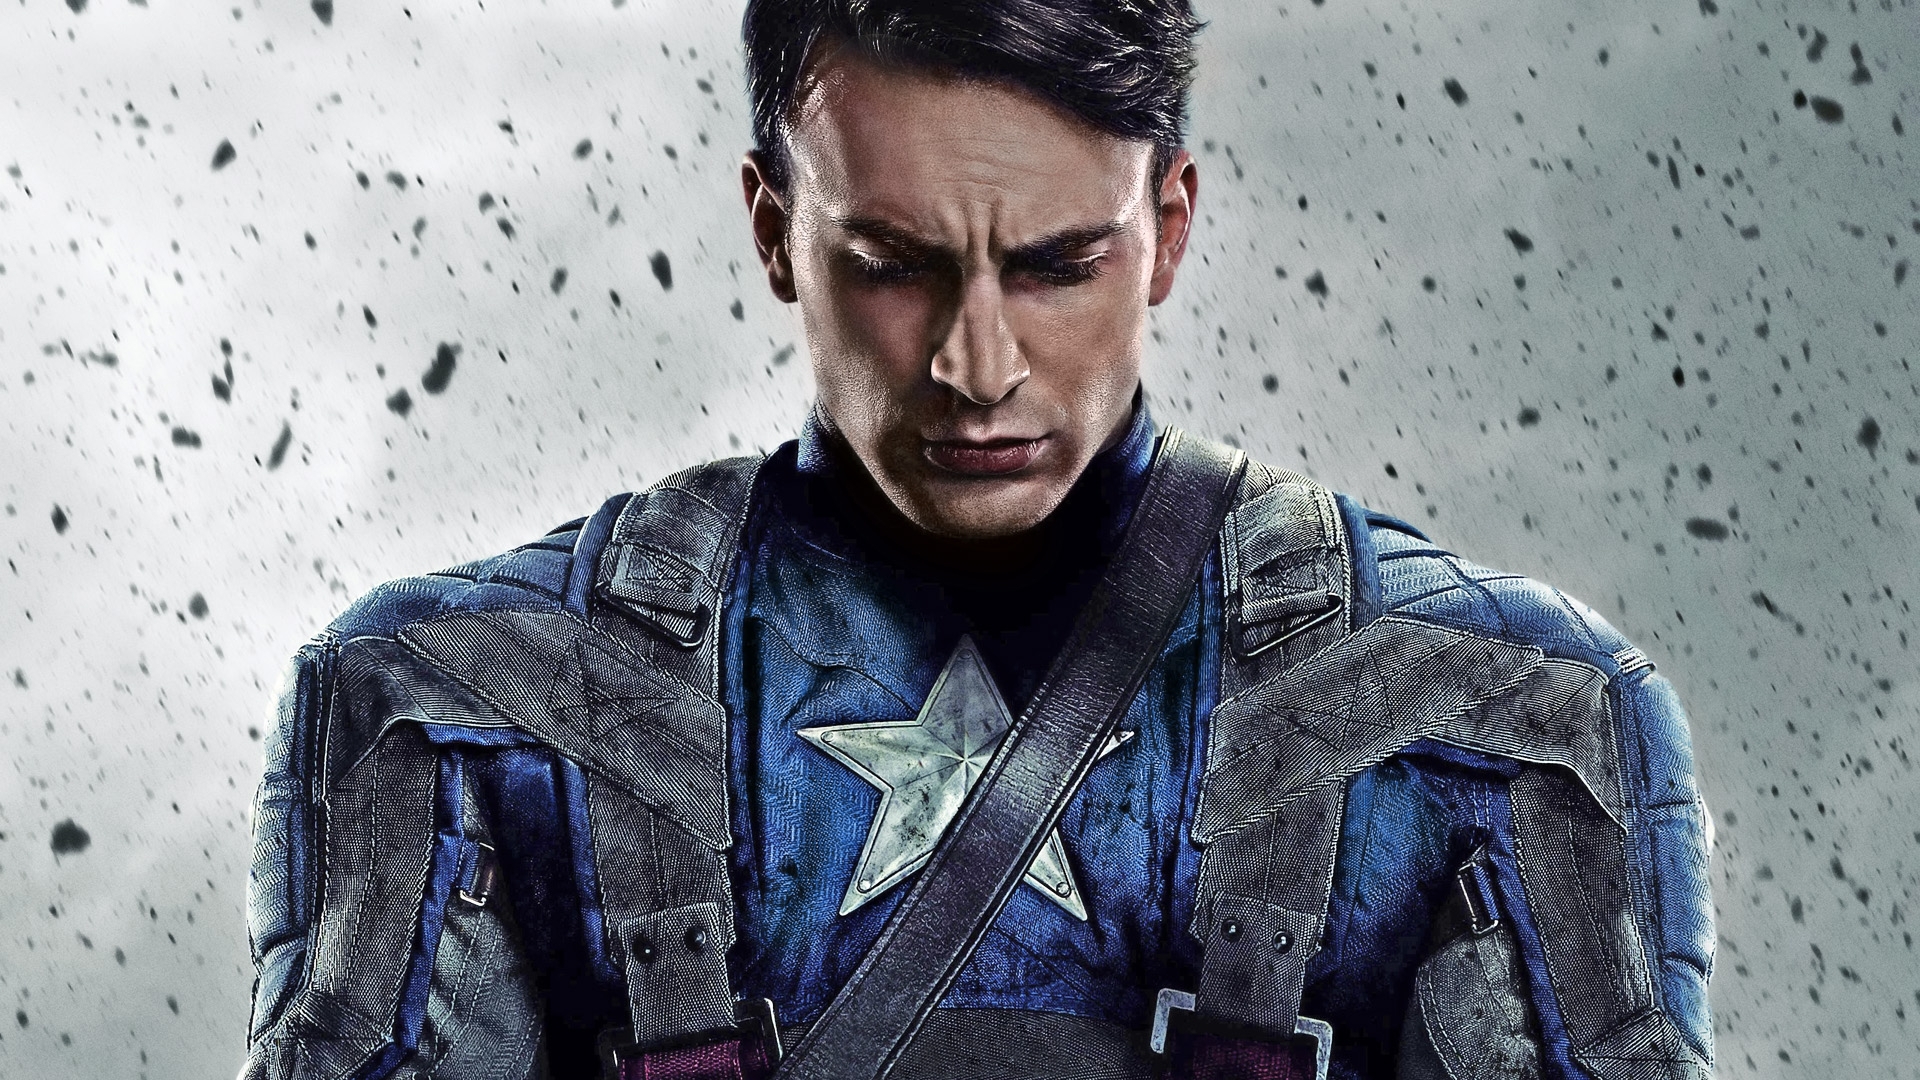 New Captain America Chris Evans Wallpaper FULL HD 1080p For PC